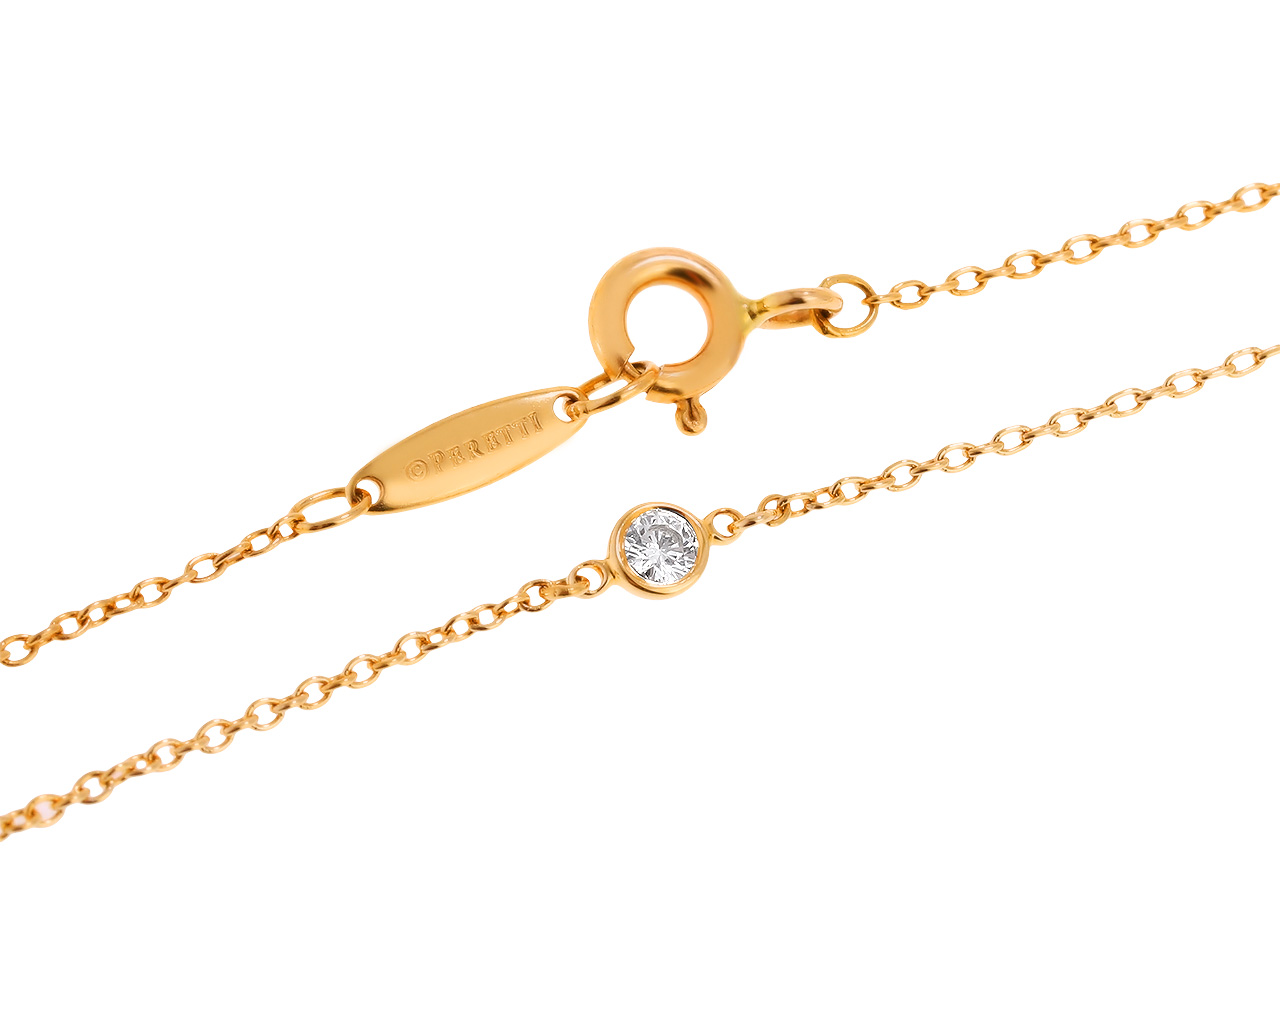 Оригинальный золотой браслет с бриллиантами 0.15ct Tiffany&Co Elsa Peretti